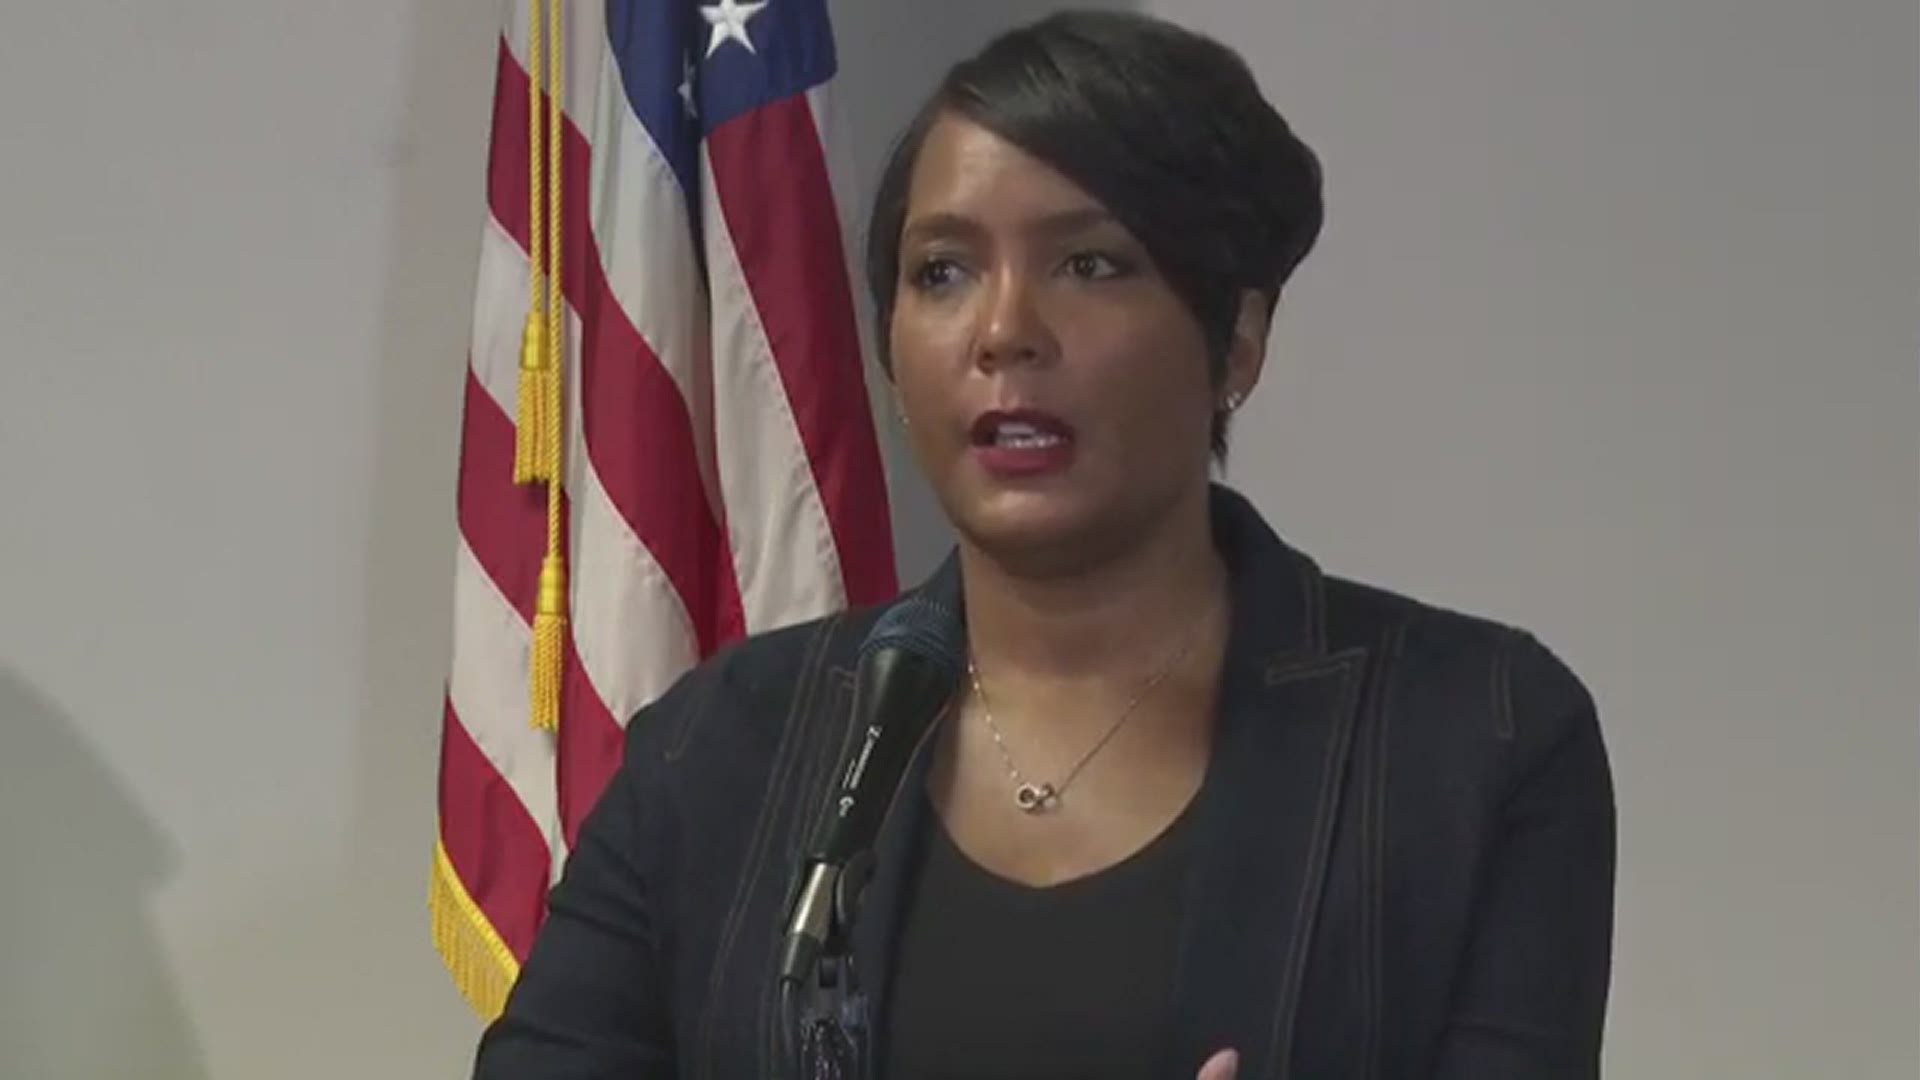 Atlanta Mayor Keisha Lance Bottoms said "we all have to do better."